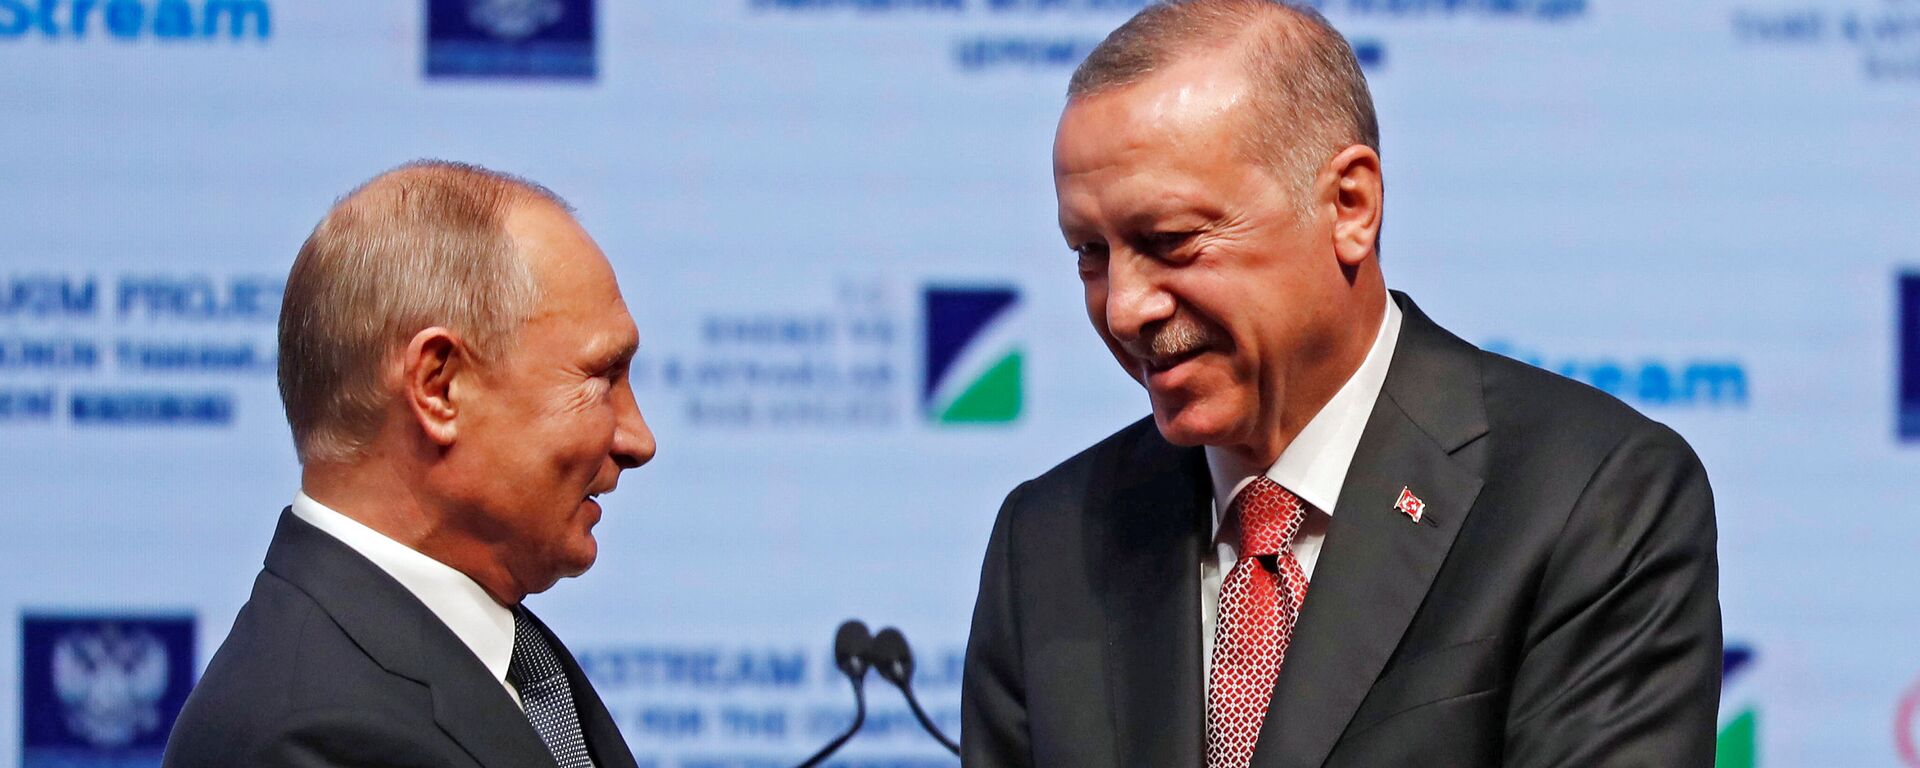 Президенты России и Турции Владимир Путин и Тайип Эрдоган отдали команду на укладку последней секции морской части газопровода Турецкий поток - Sputnik Таджикистан, 1920, 27.12.2019